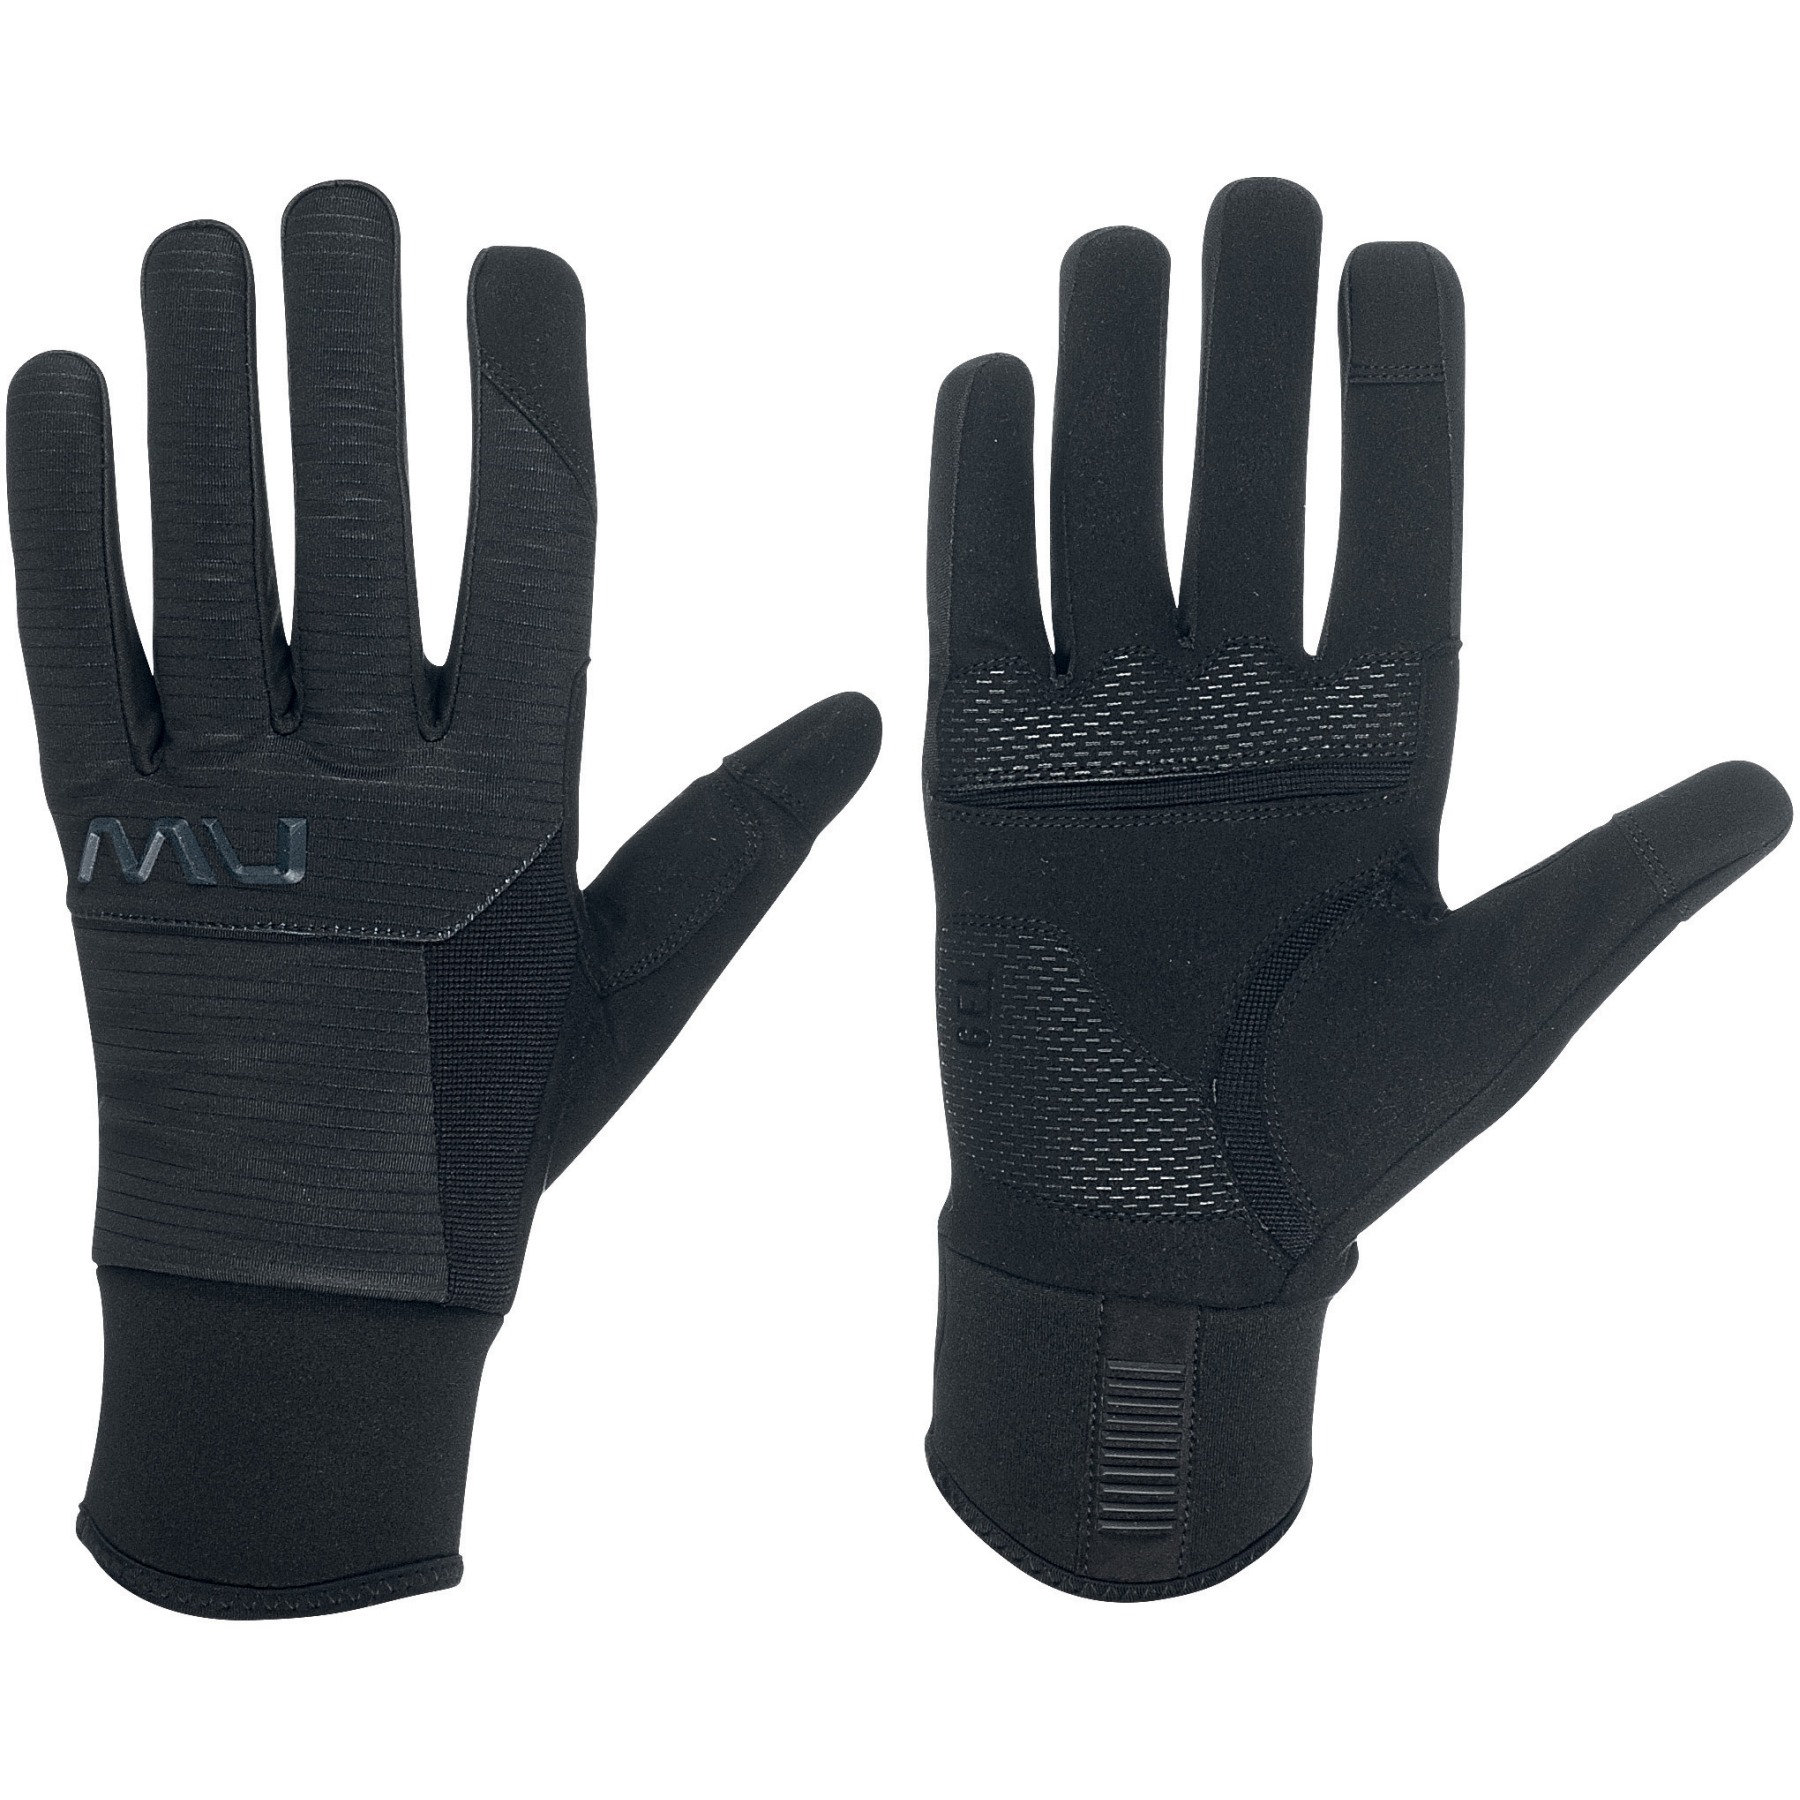 Produktbild von Northwave Fast Gel Handschuhe - schwarz